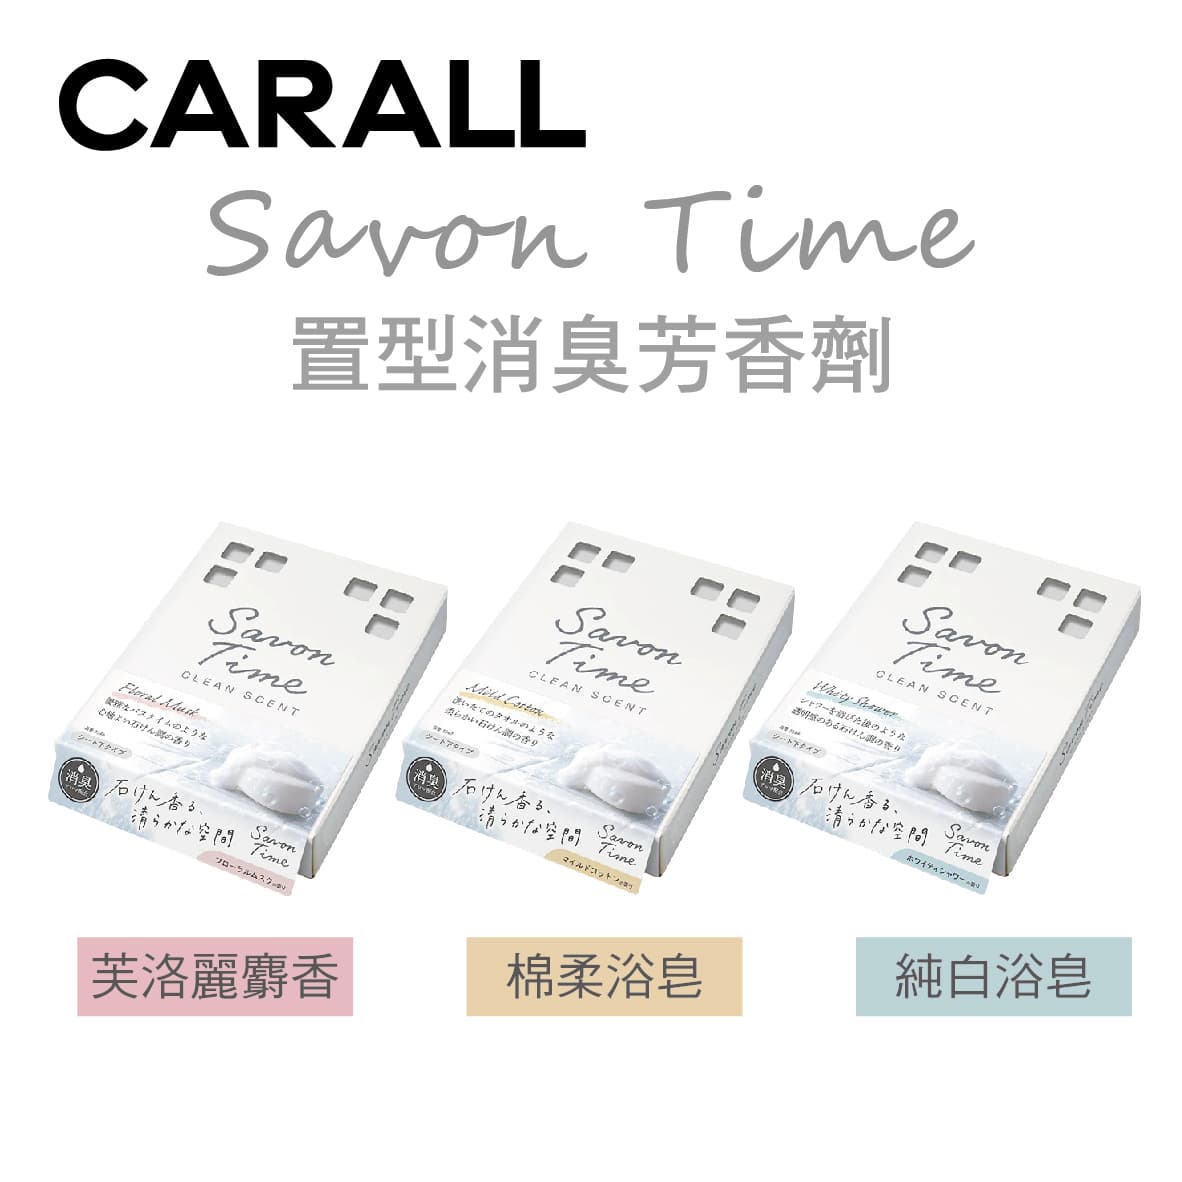 真便宜 CARALL Savon Time 置型消臭芳香劑165ml